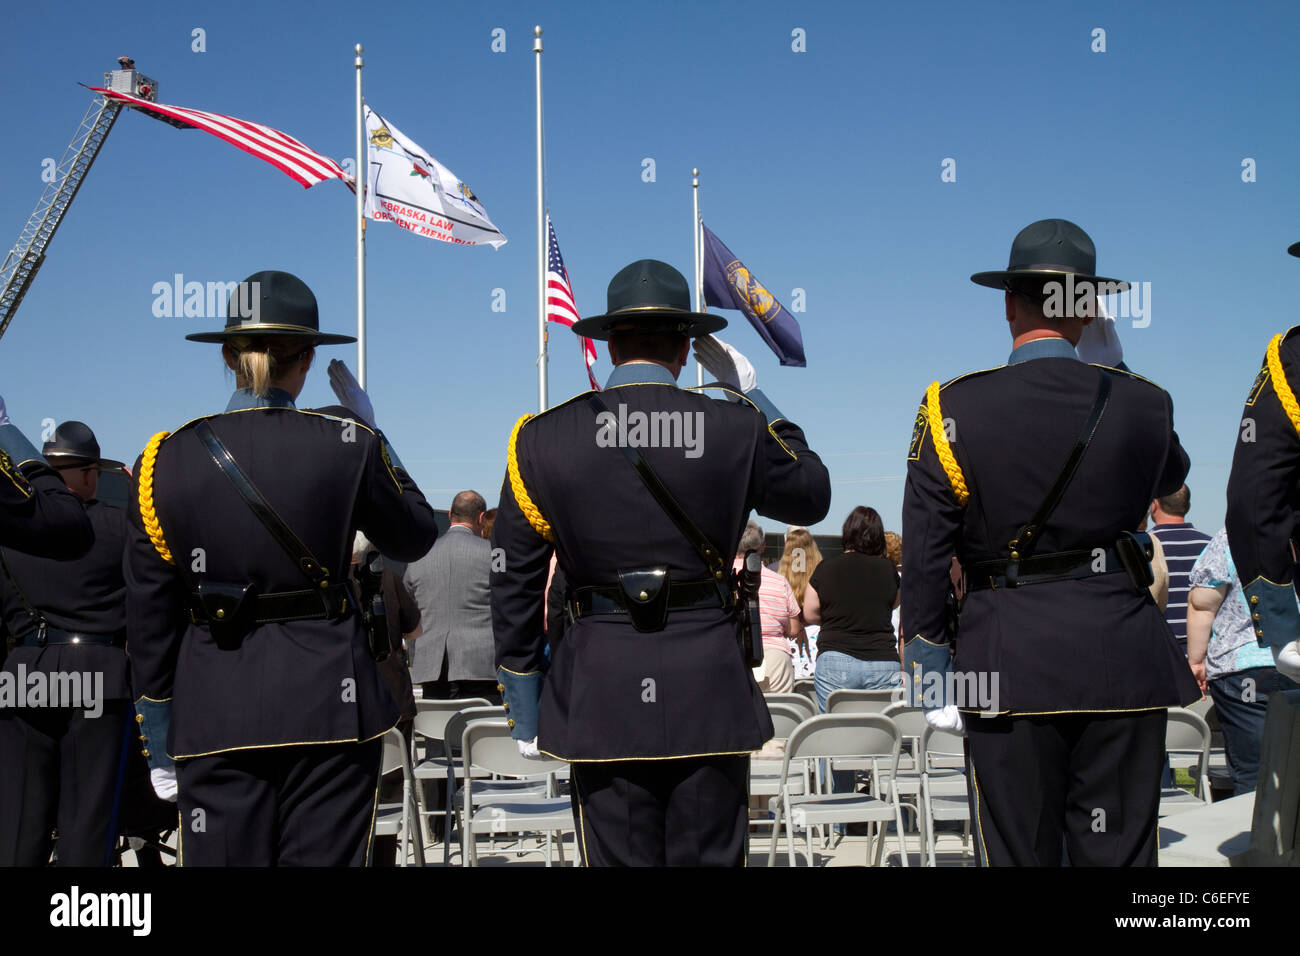 Cérémonie commémorative de l'application de la loi, Grand Island, Nebraska en 2011. Patrouille de l'État, color guard, honorant la tombée. Banque D'Images